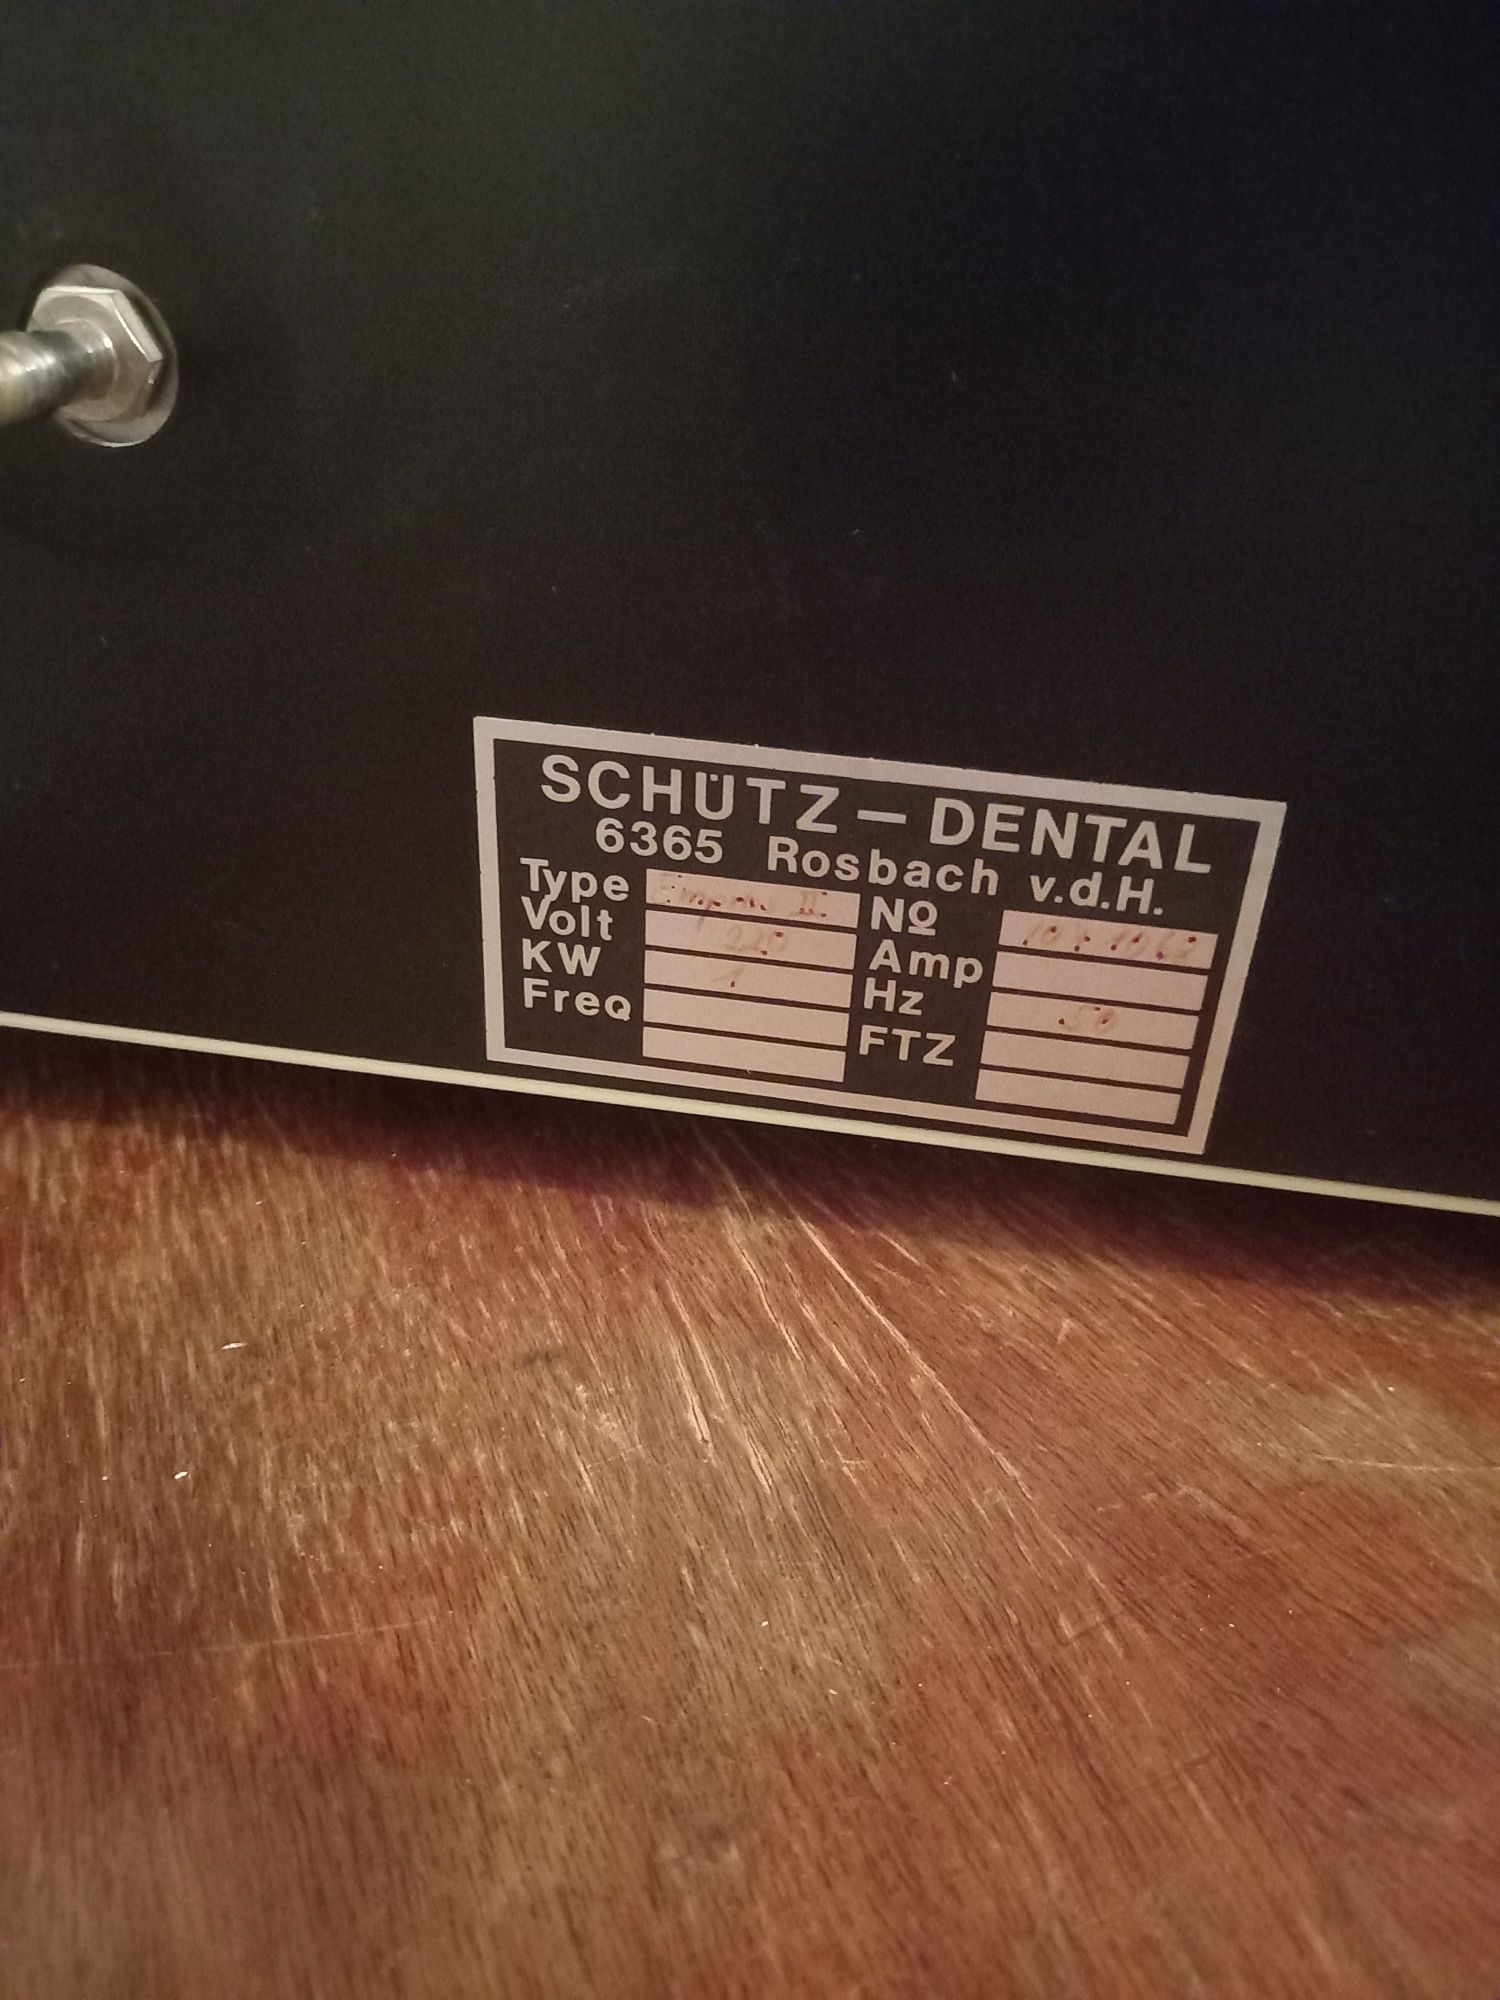 Cuptor ceramica Shutz Dental Tehnica dentara